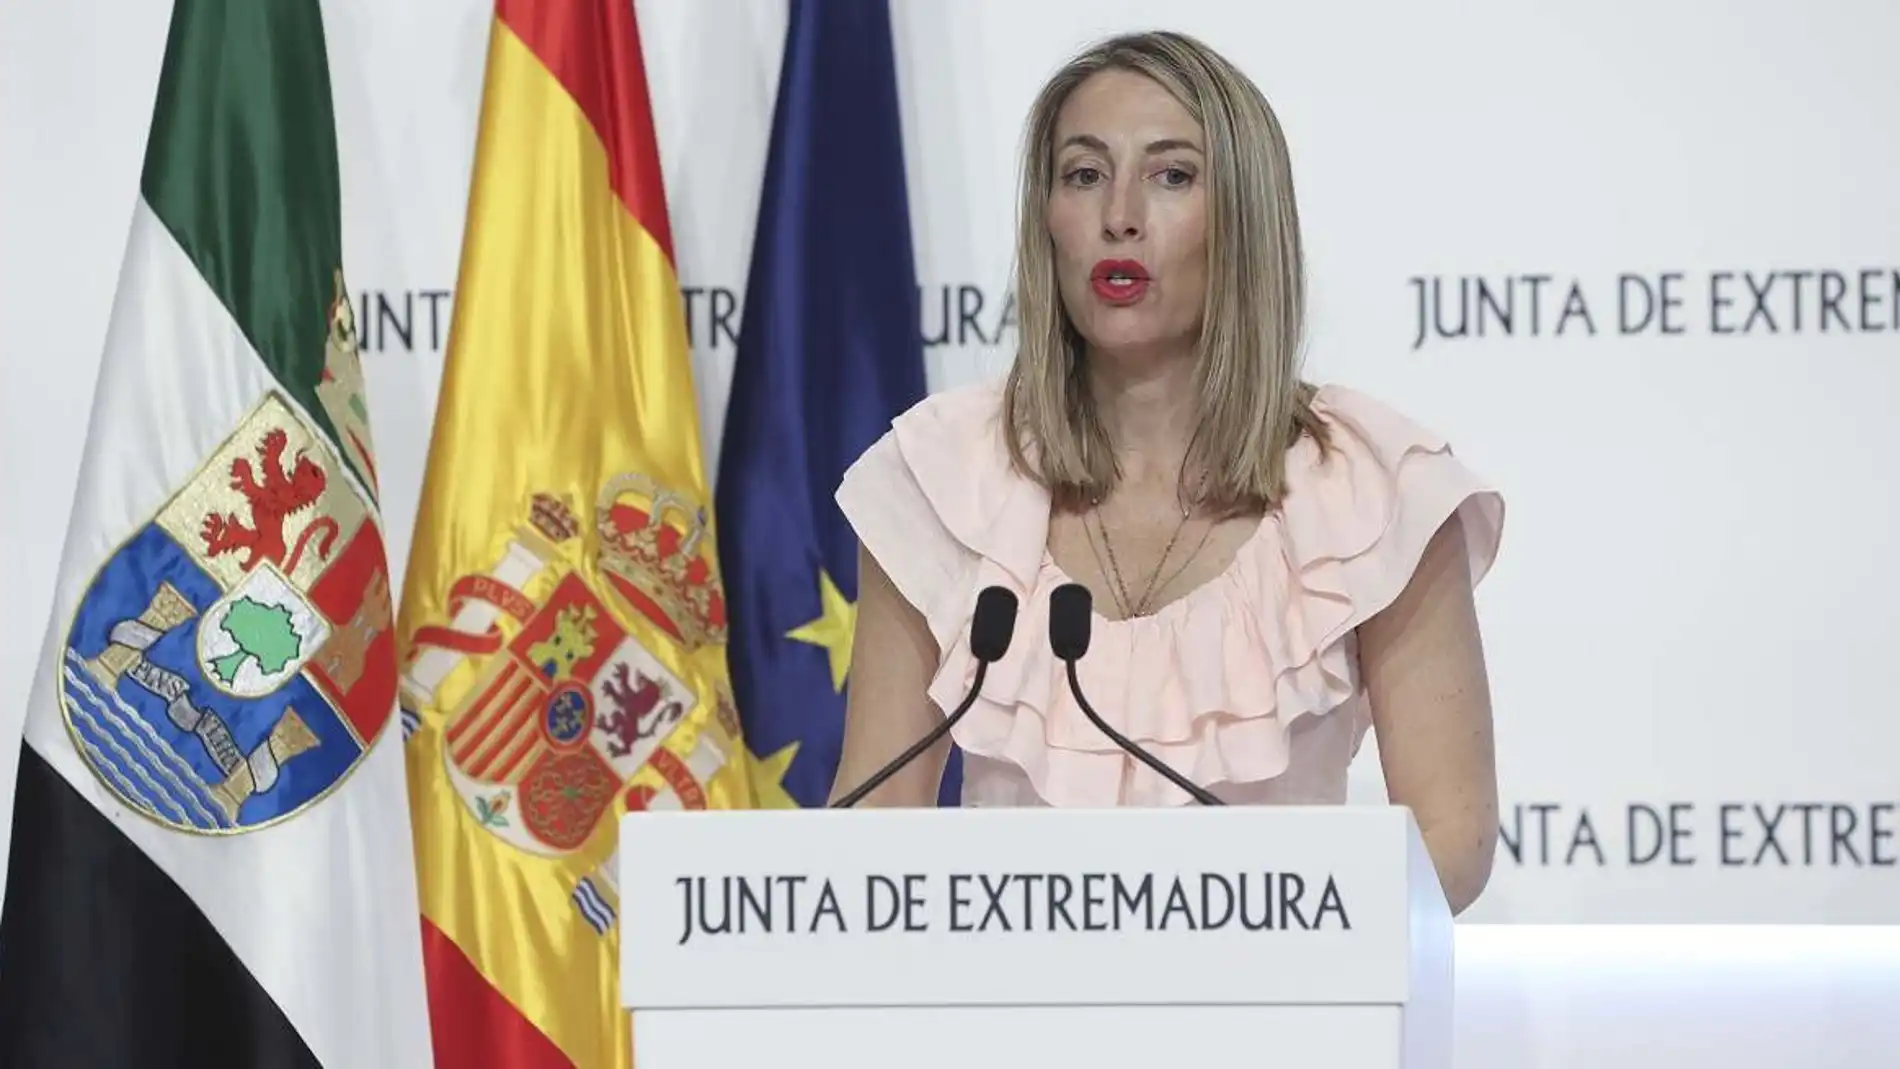 La Junta de Extremadura se reafirma en que seguirá alzando la voz "desde la racionalidad" contra los "privilegios" y la amnistía